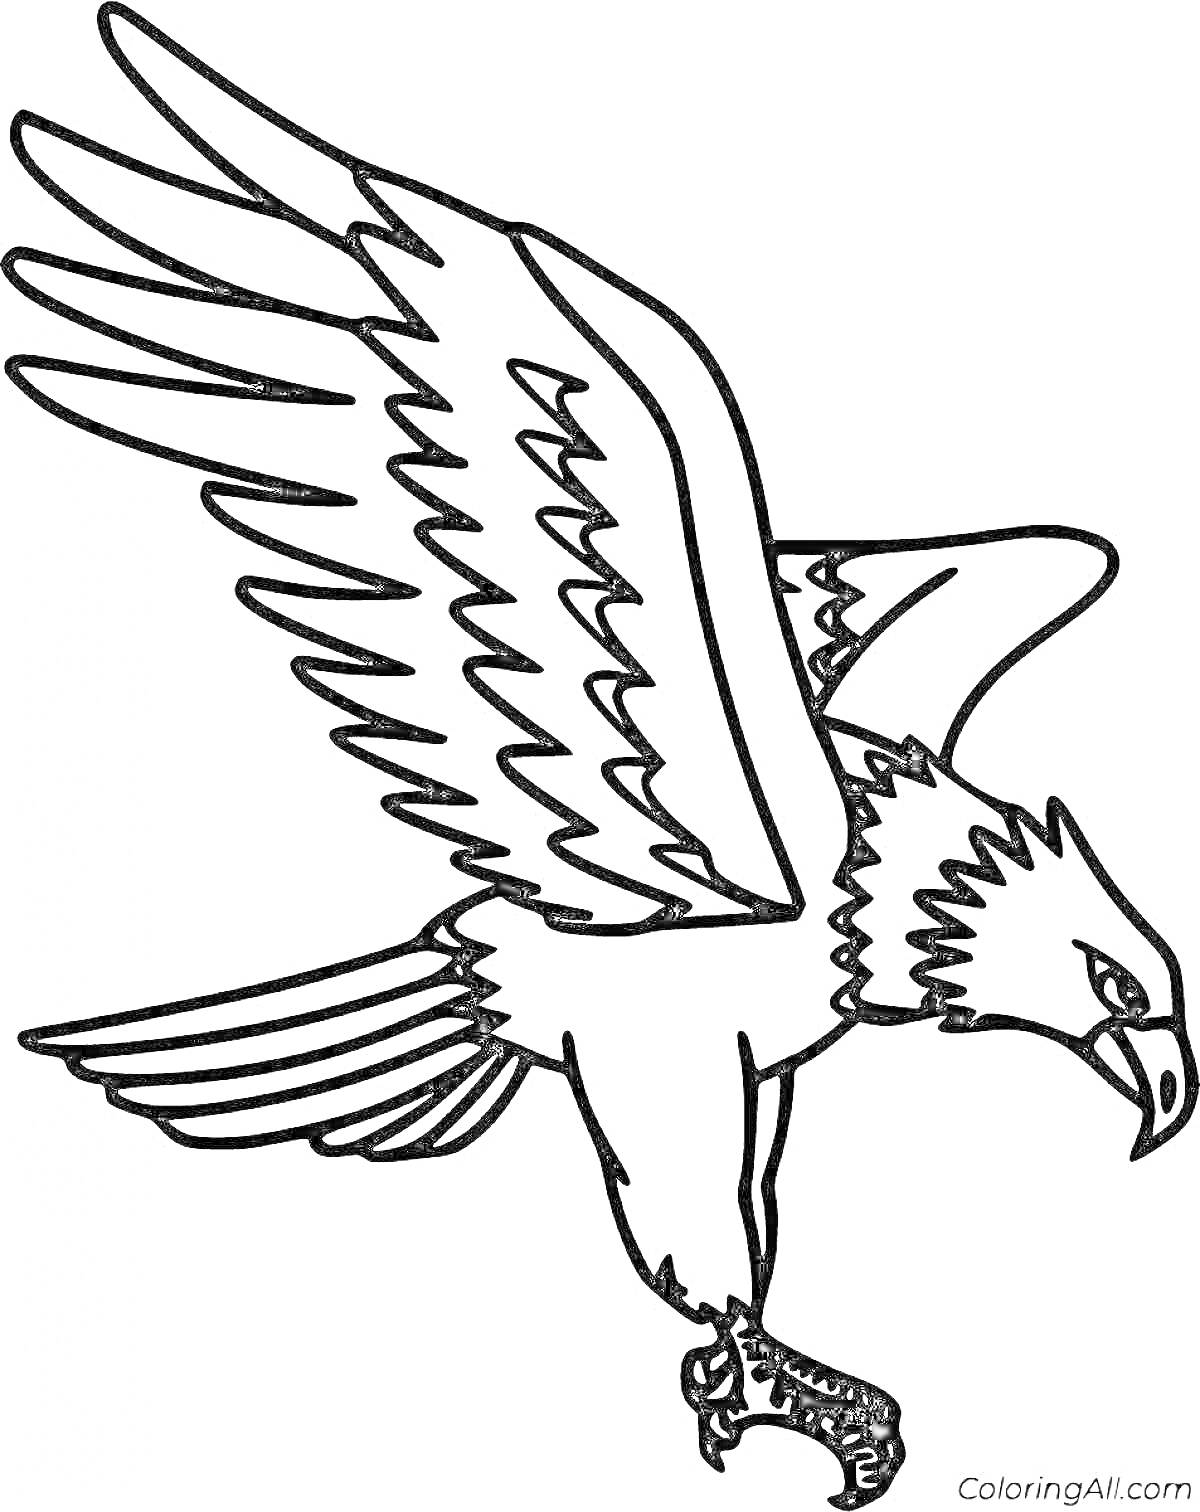 Раскраска Орленок с расправленными крыльями, спускающийся вниз с выпущенными когтями